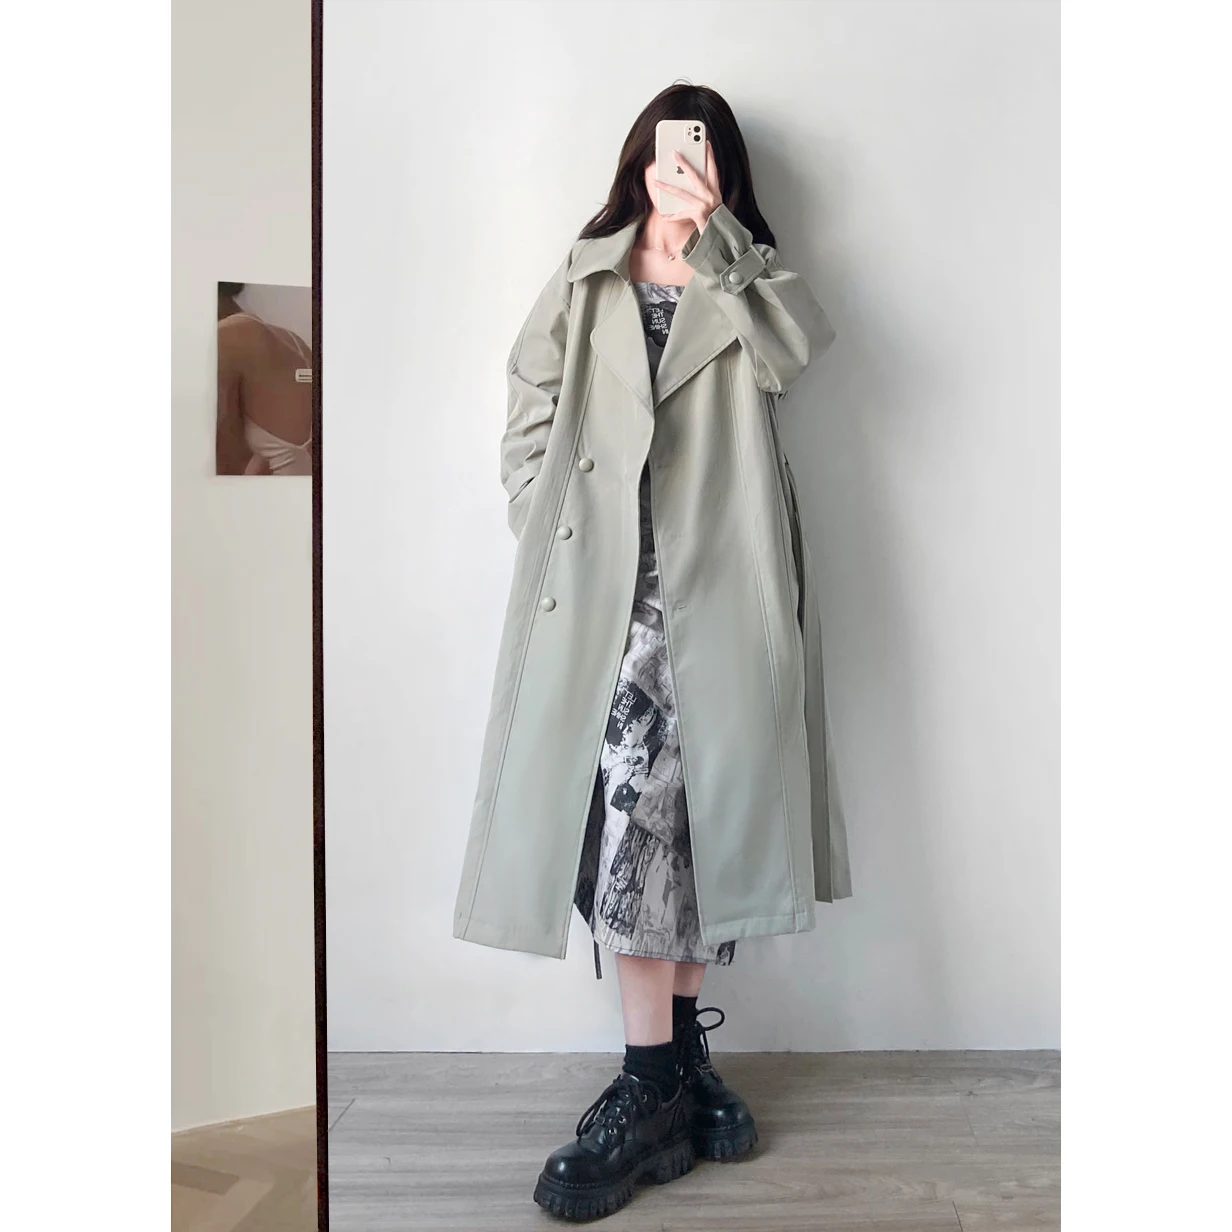 Moda Yeni Haki Pembe Trençkot Kadın Tek göğüslü Uzun Silgi Ceket Kemer Bayan Rüzgarlık Bahar Sonbahar Giyim